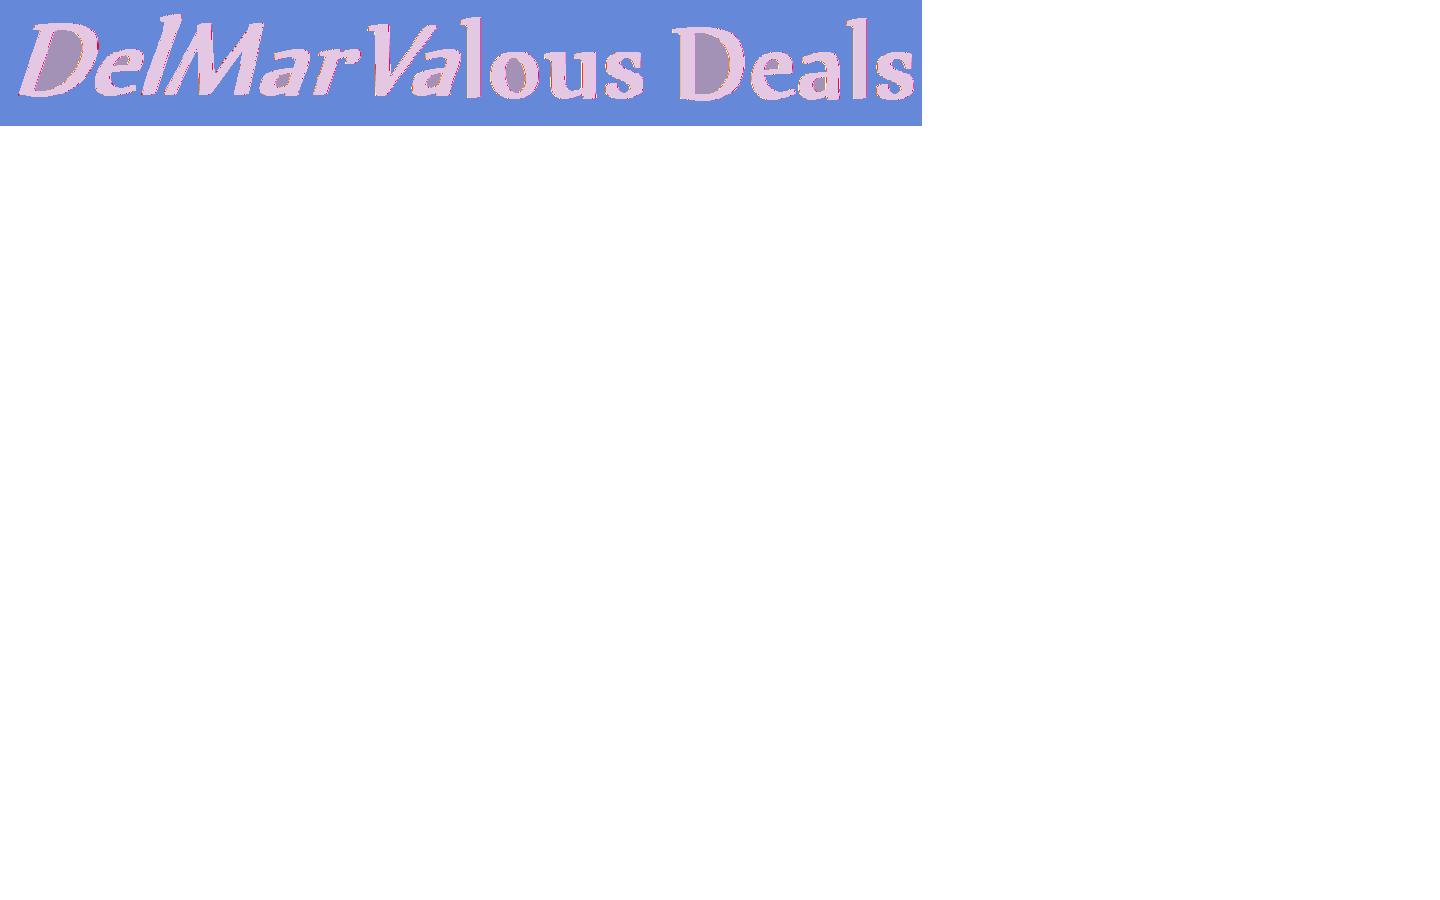 DelMarValous Deals